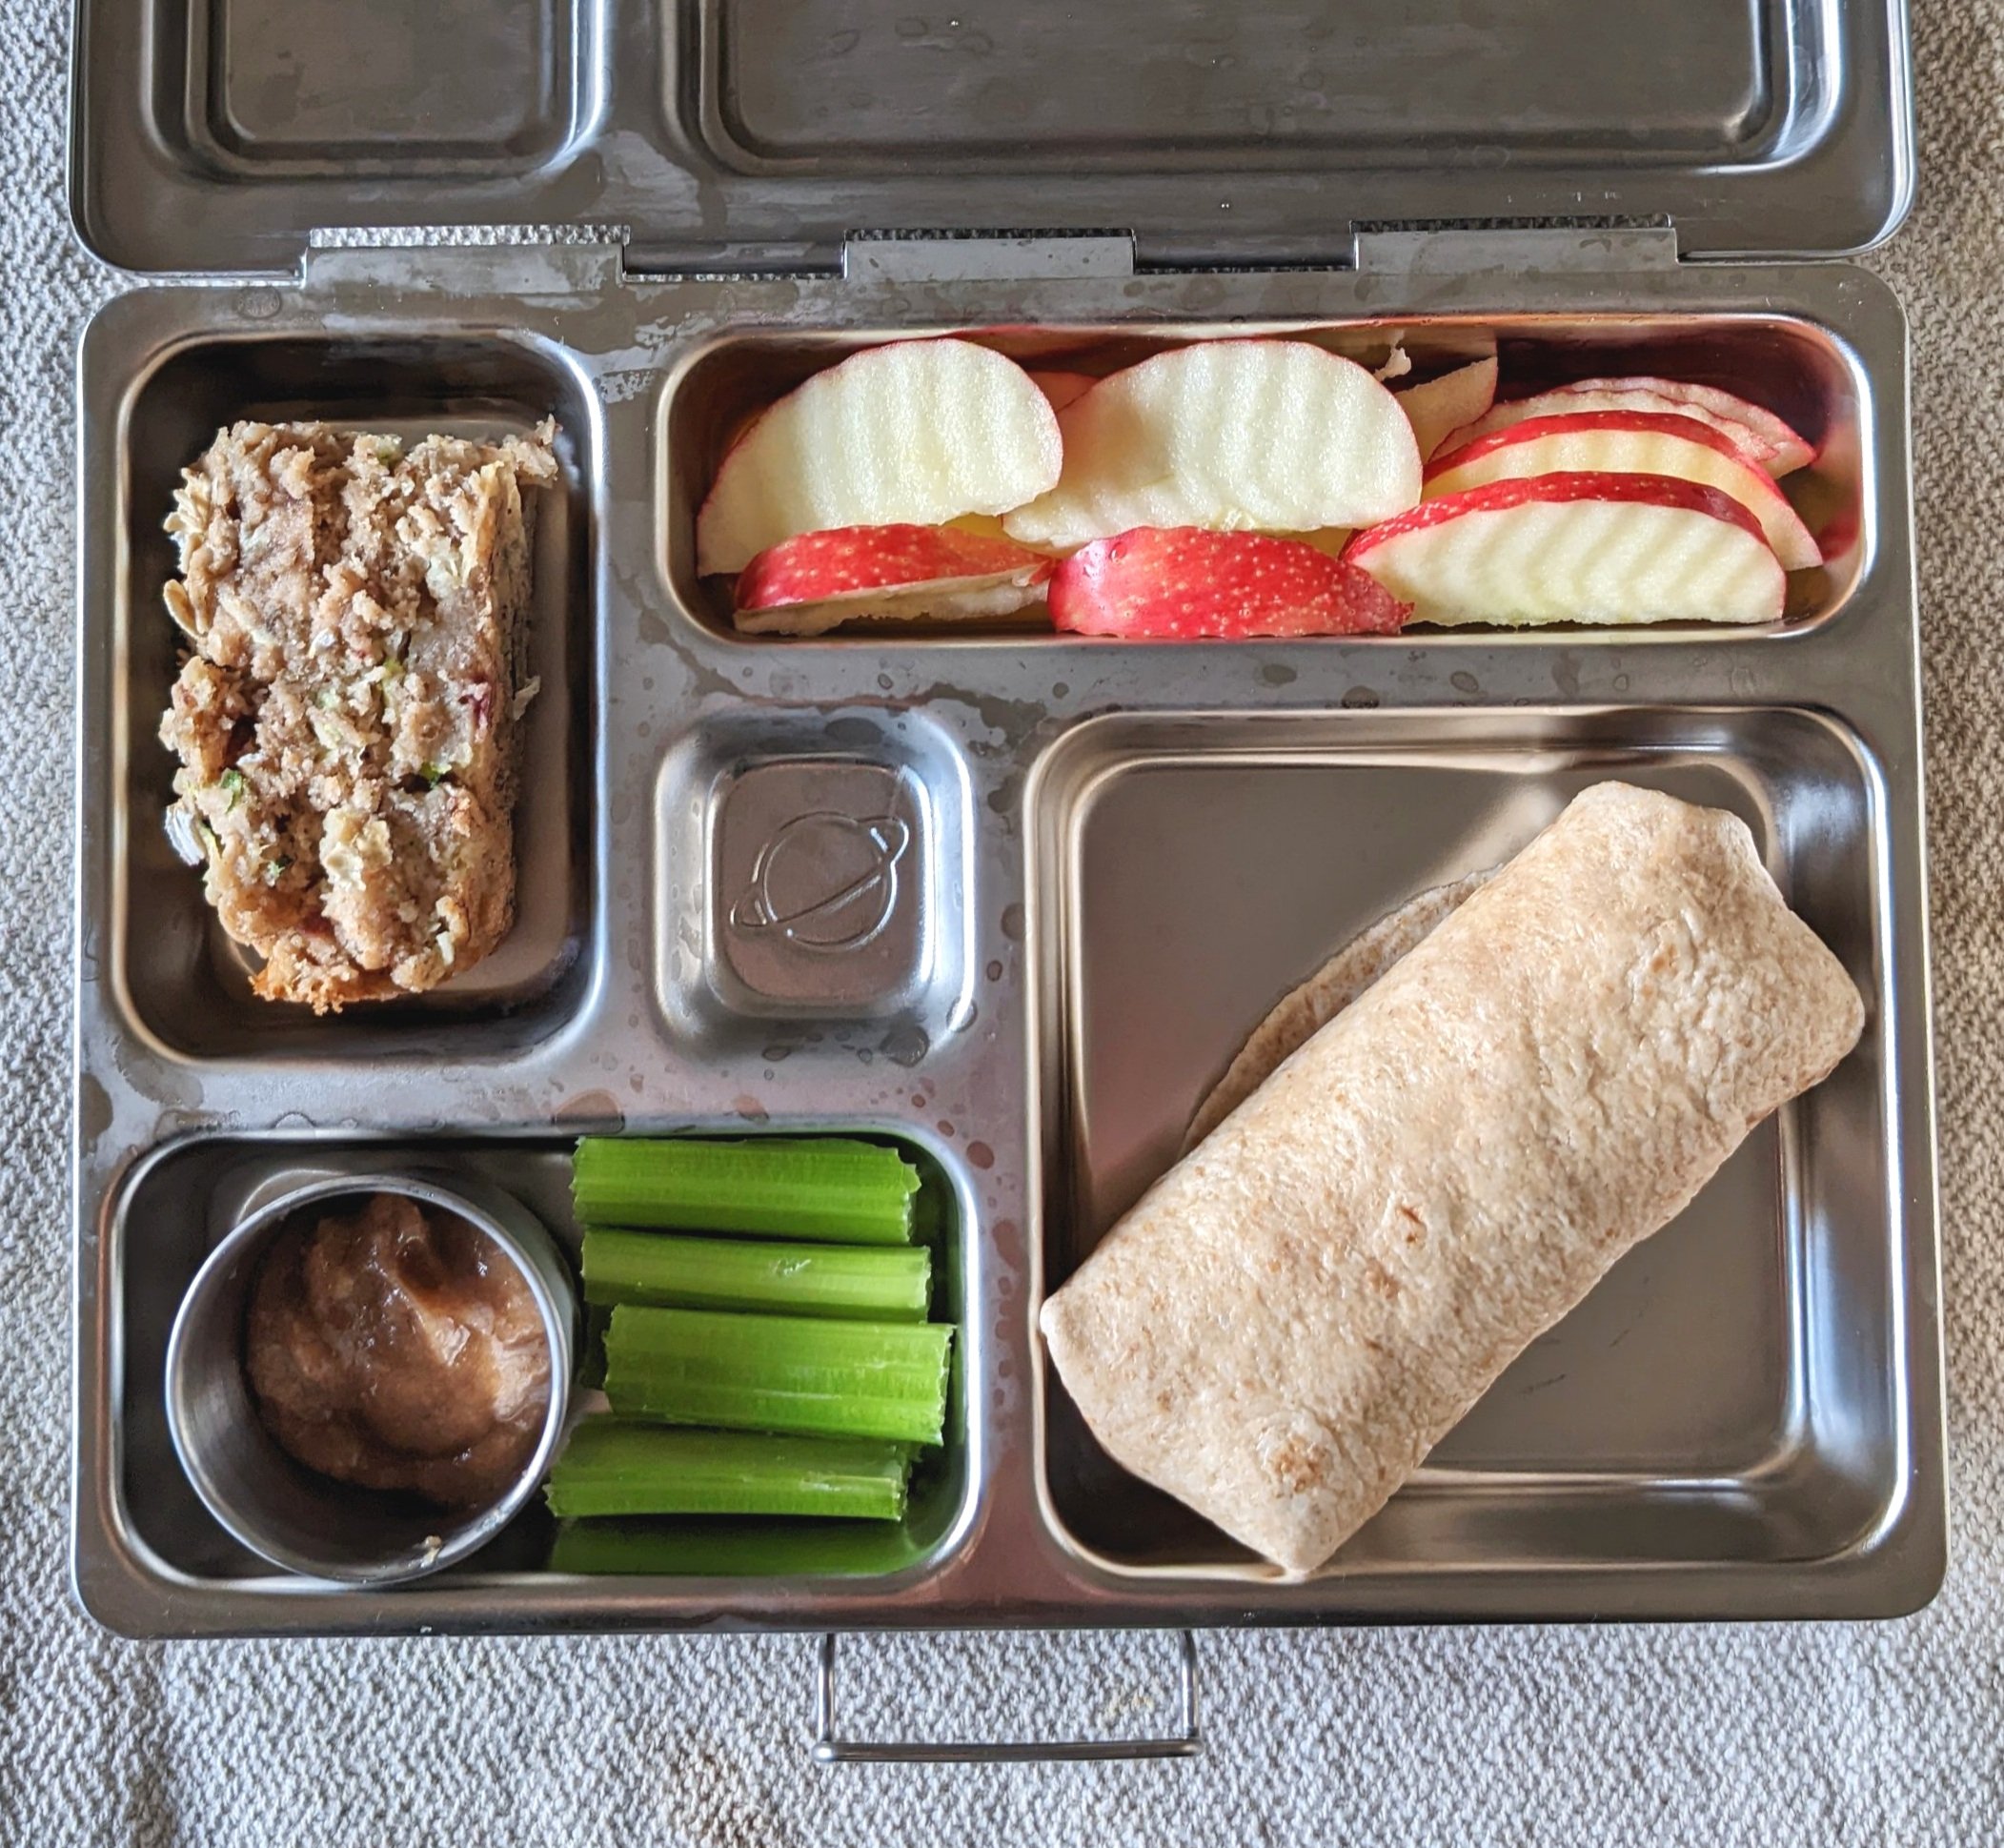 daycare lunch — Vegan Kids Nutrition Blog - Vegan Kids Nutrition